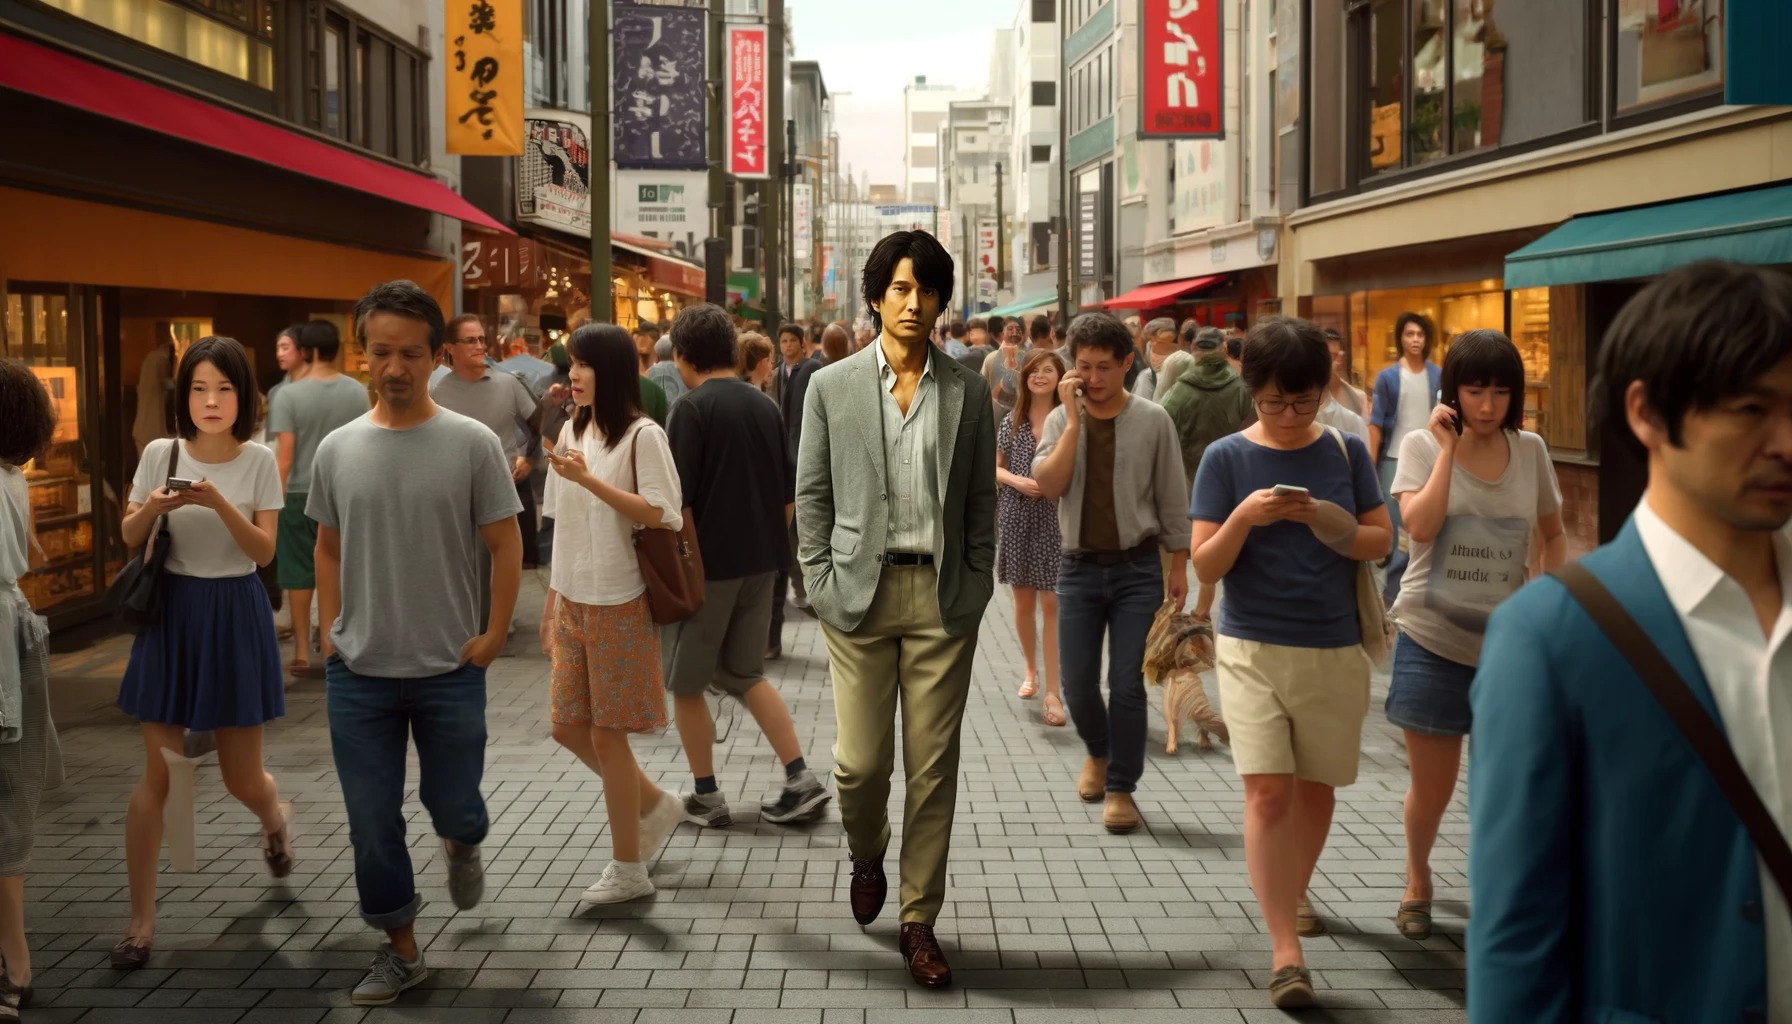 【悲報画像】福山雅治さん、神戸の繁華街を歩くもキャーキャー言われるどころか見向きもされない